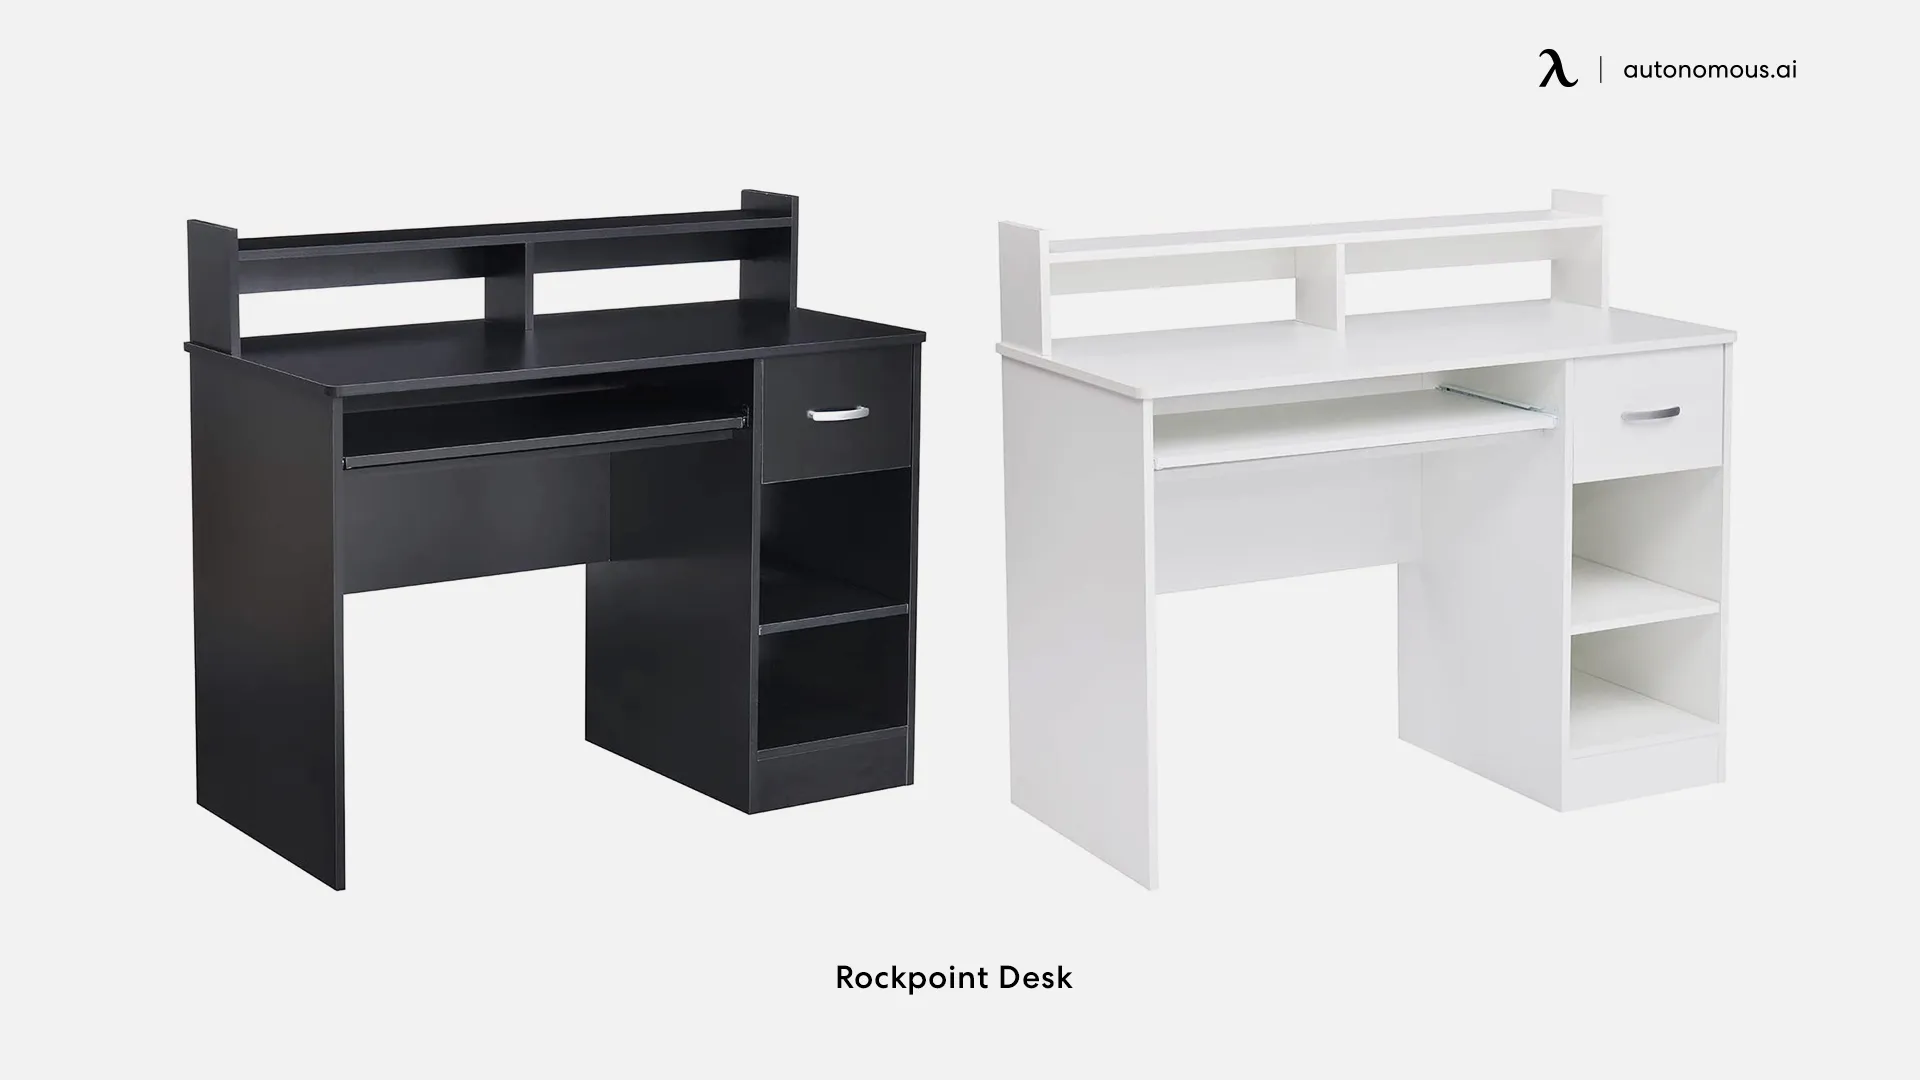 Rockpoint Desk - dorm desk